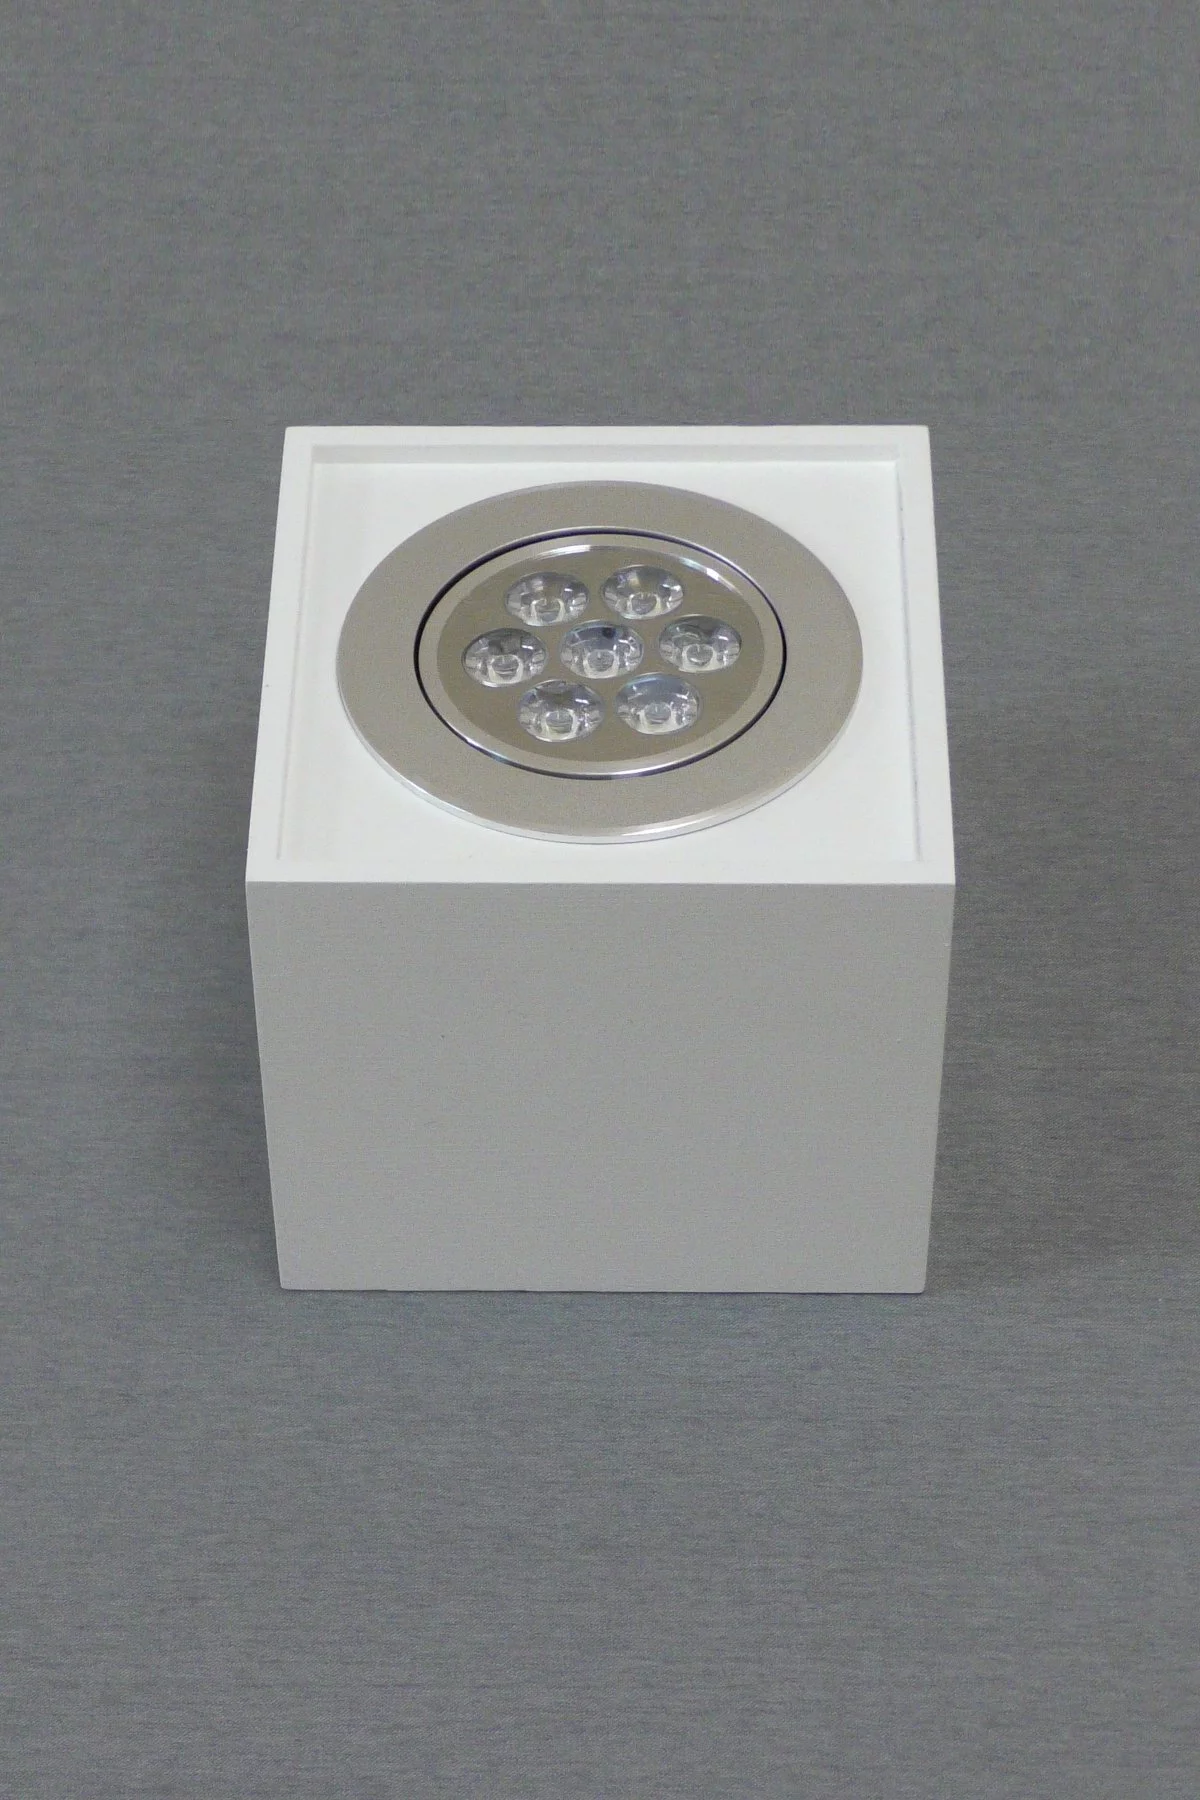   
                        Точечный светильник NOWODVORSKI  (Польша) 78667    
                         в стиле Хай-тек.  
                        Тип источника света: встроенный led-модуль, несъемный.                         Форма: Параллелепипед.                                                                          фото 4